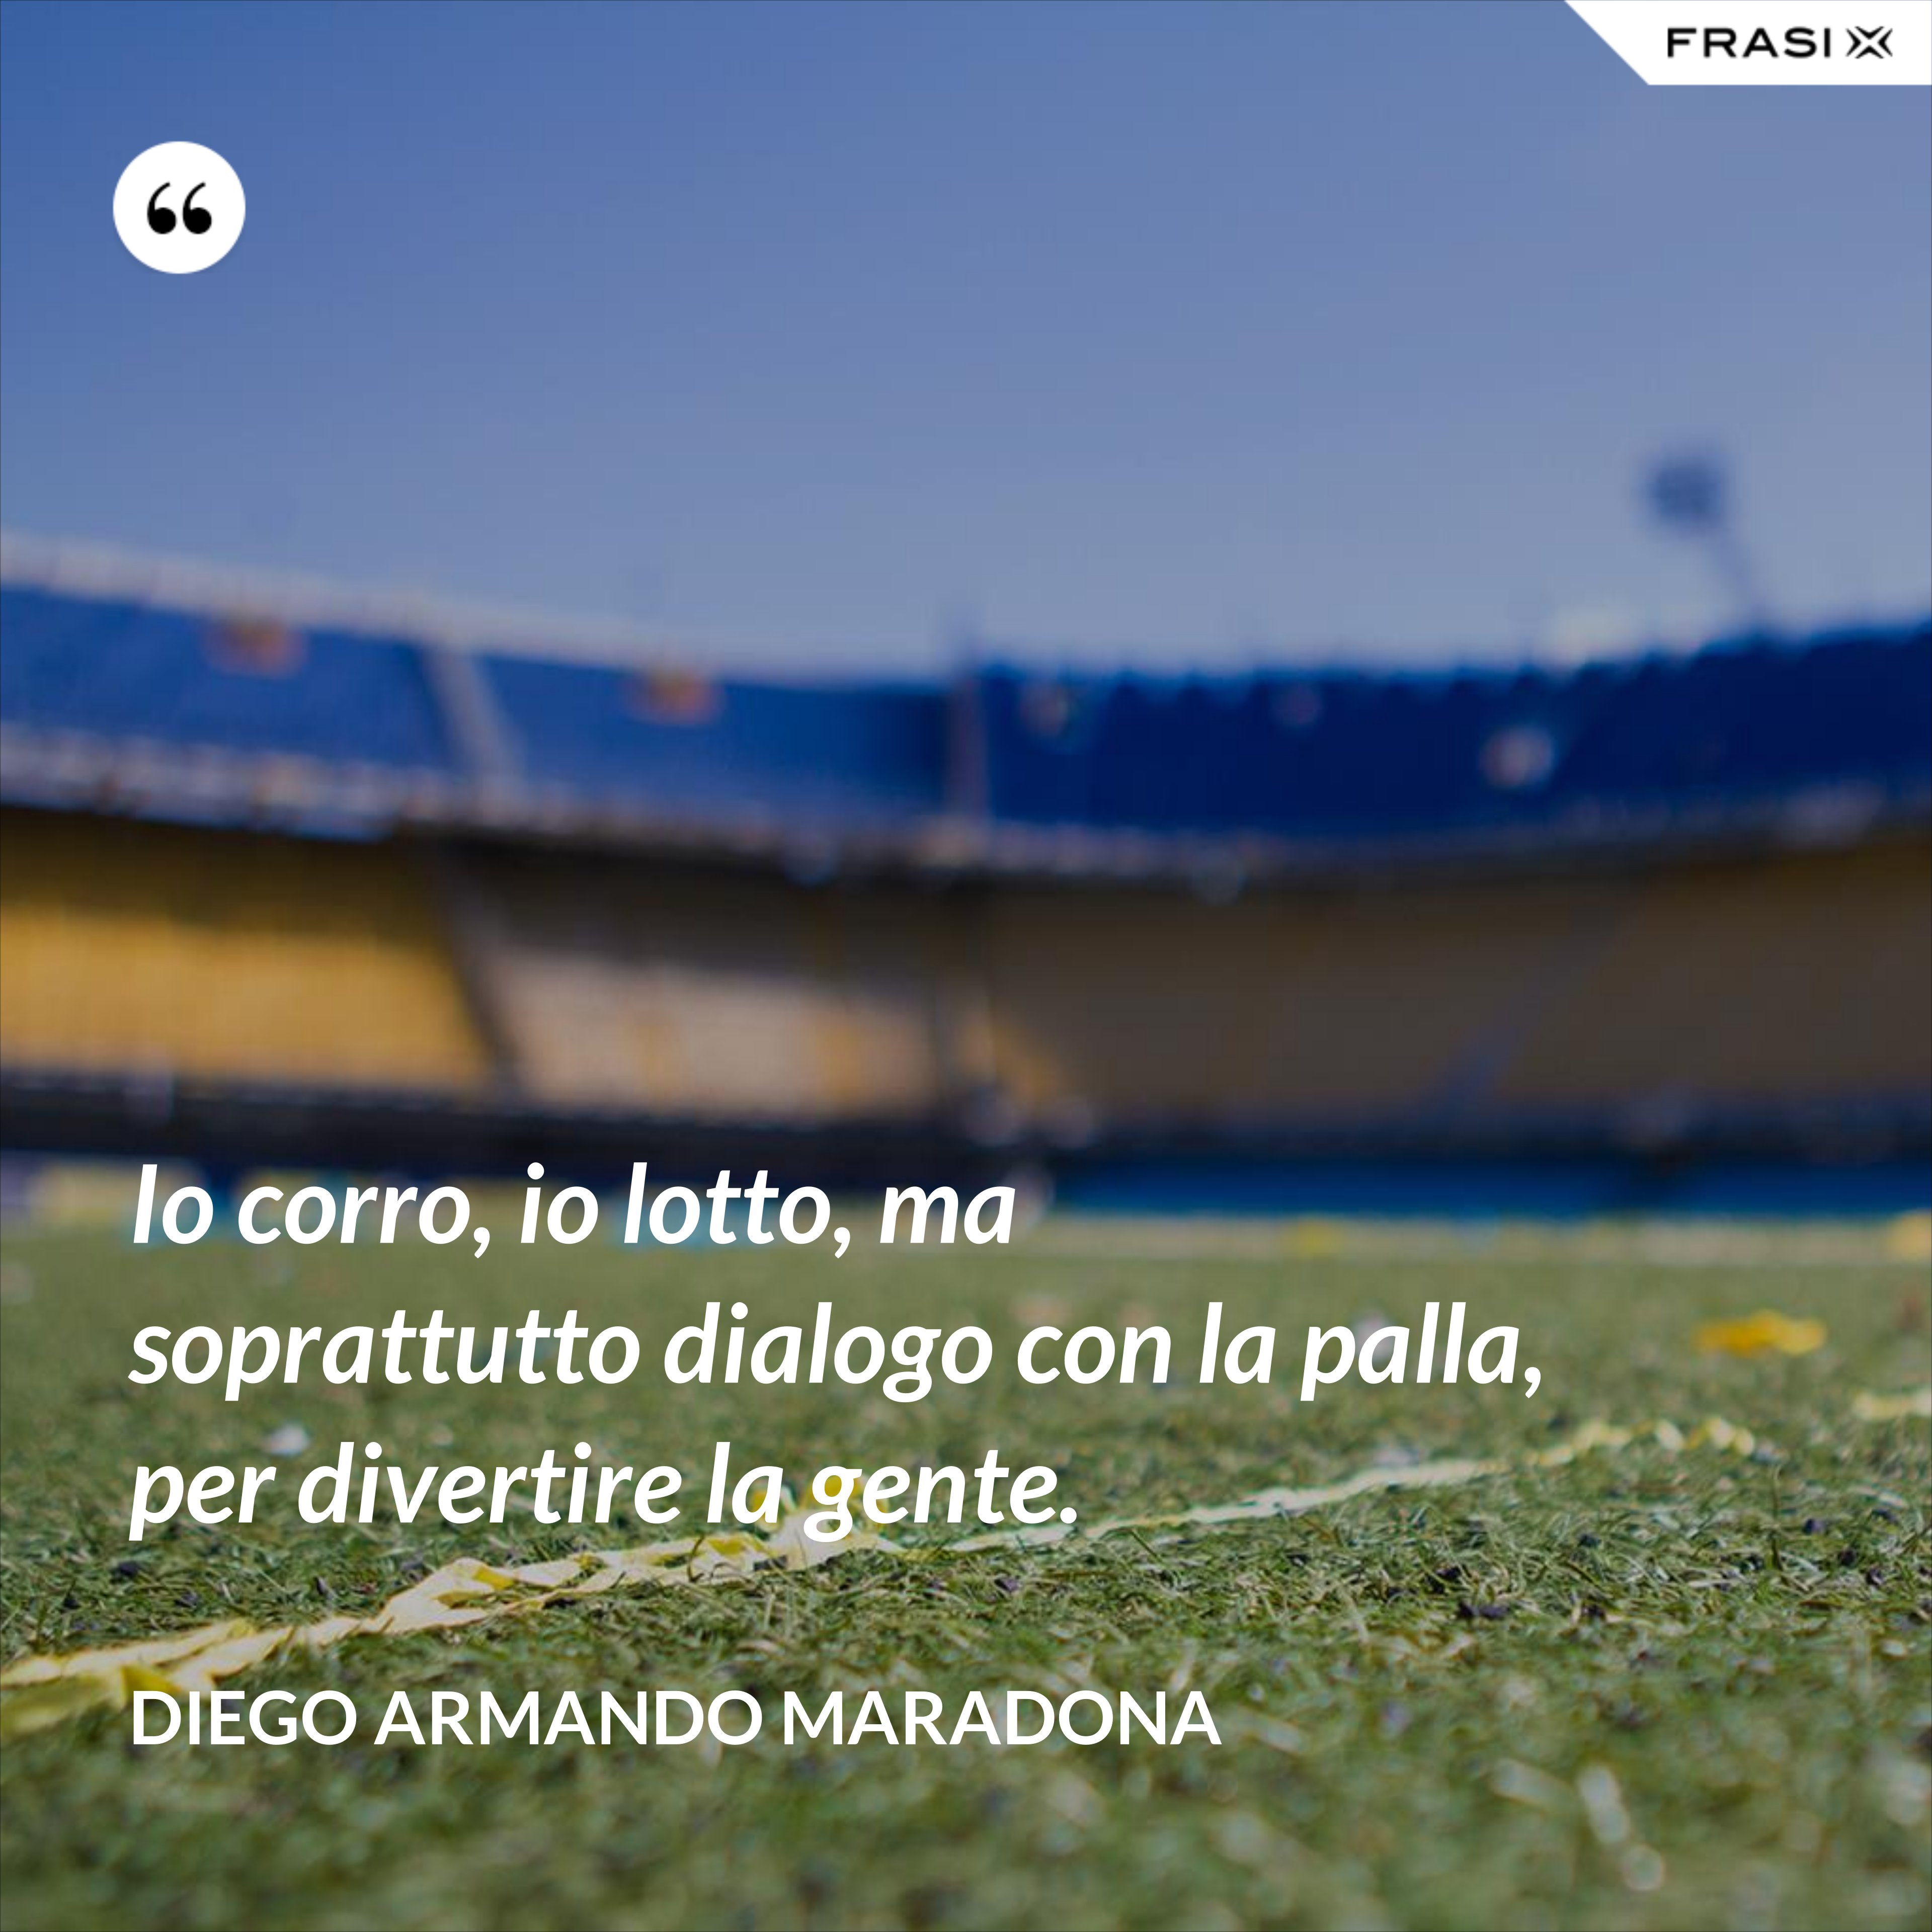 Io corro, io lotto, ma soprattutto dialogo con la palla, per divertire la gente. - Diego Armando Maradona